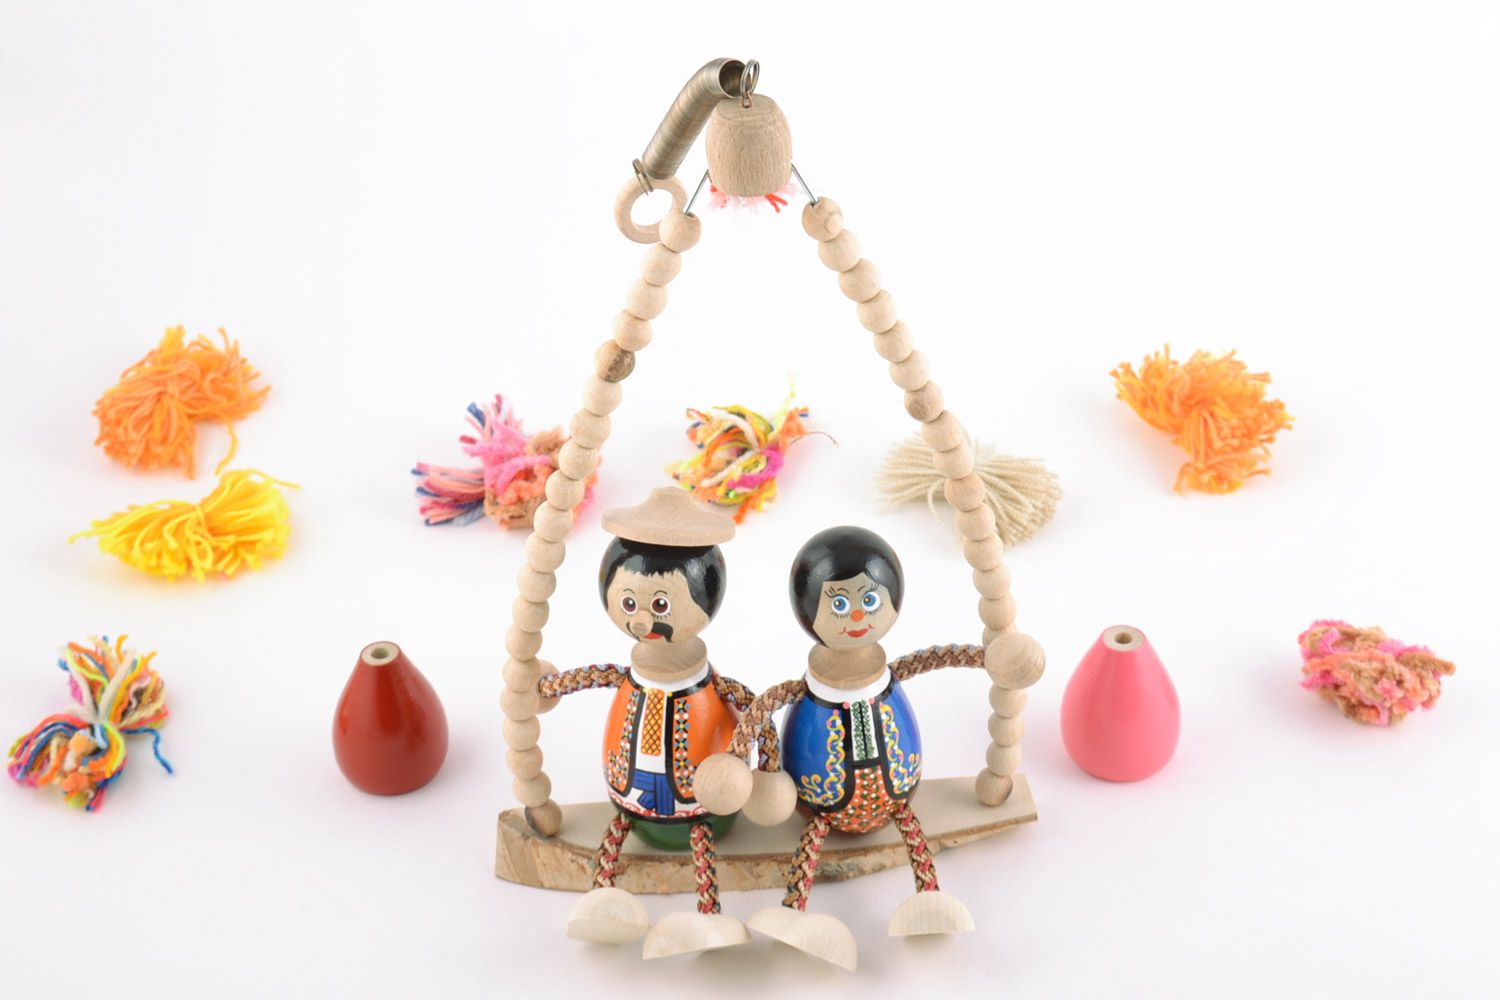 Joli jouet fait main peint de couleurs écologiques Couple à la balançoire photo 1